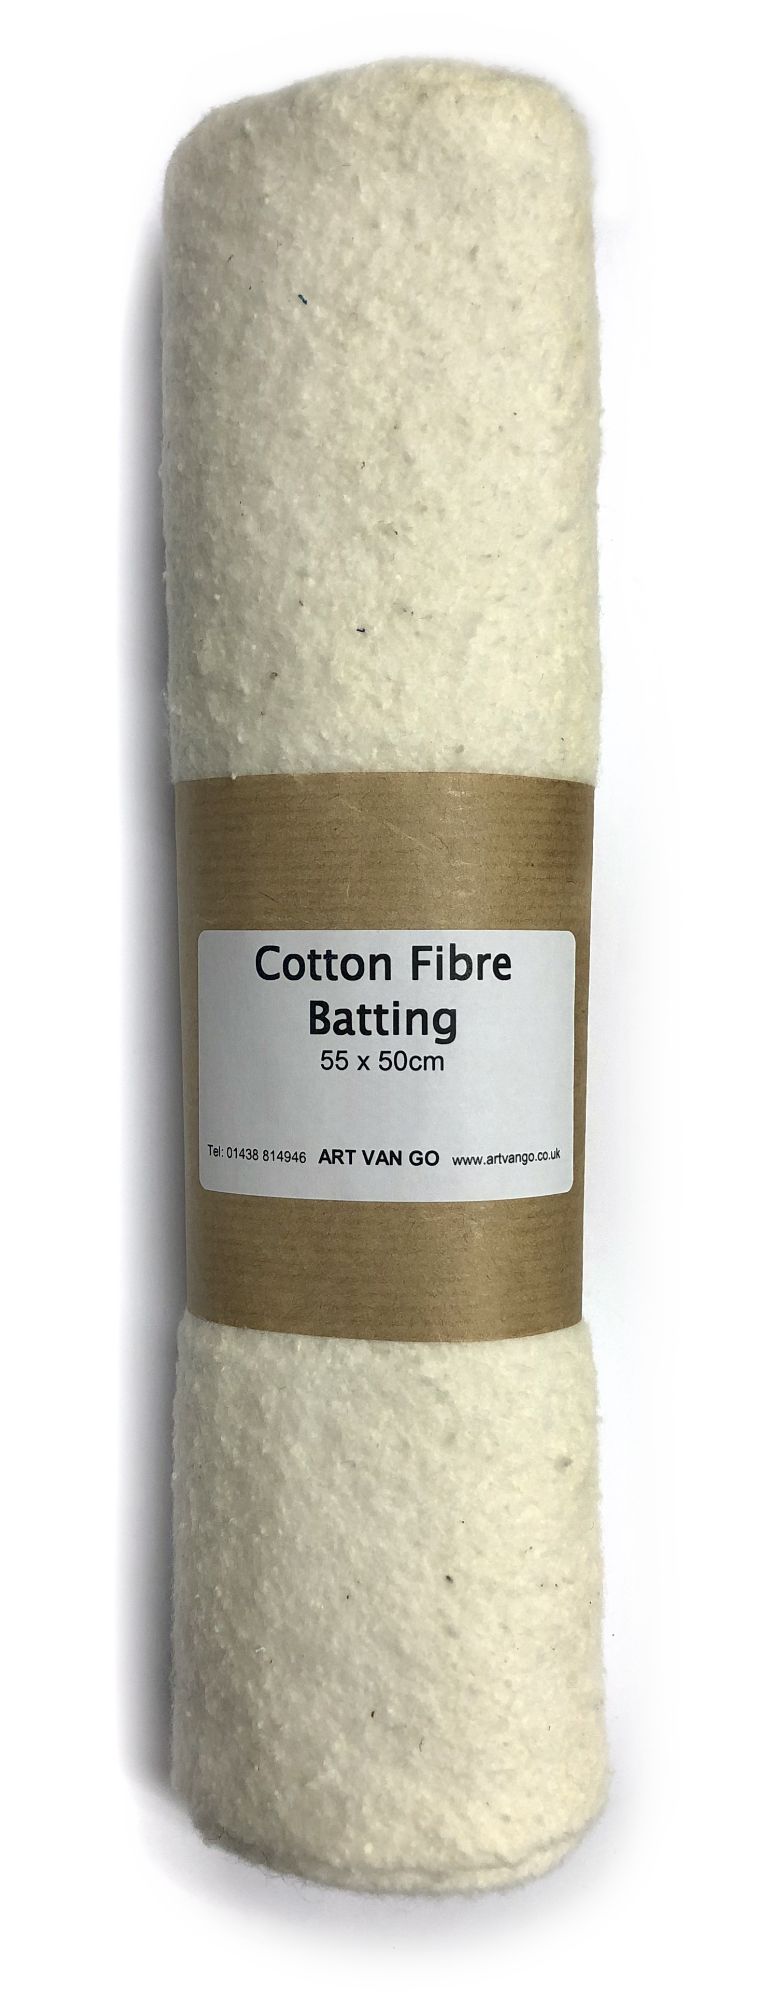 Cotton Fibre Batting 55 x 50cm